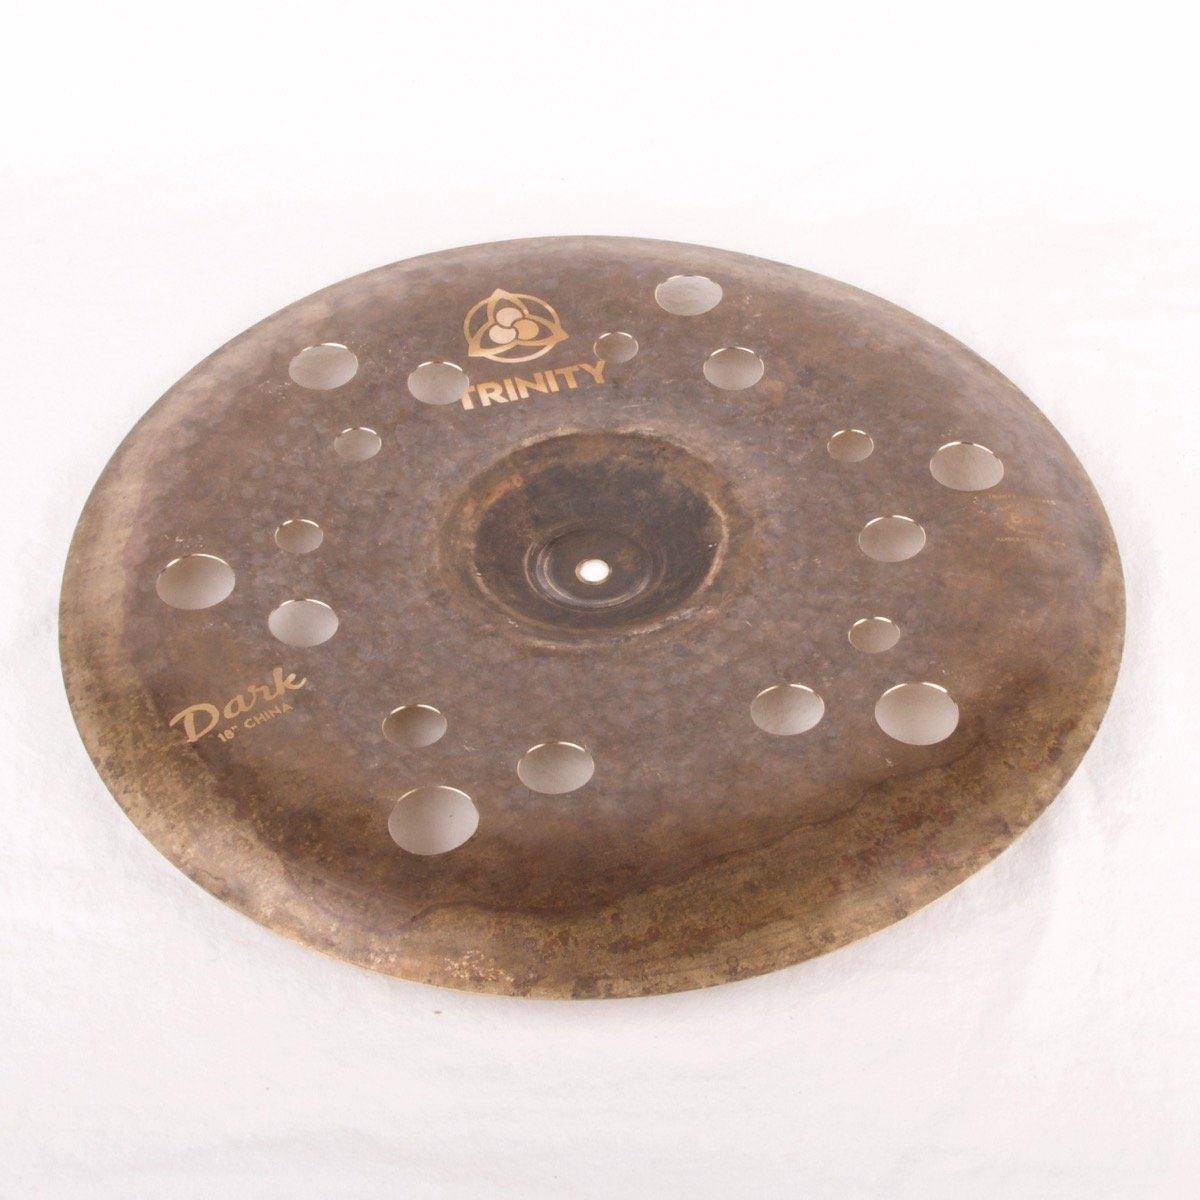 16" Trinity Dark Holey China Cymbal